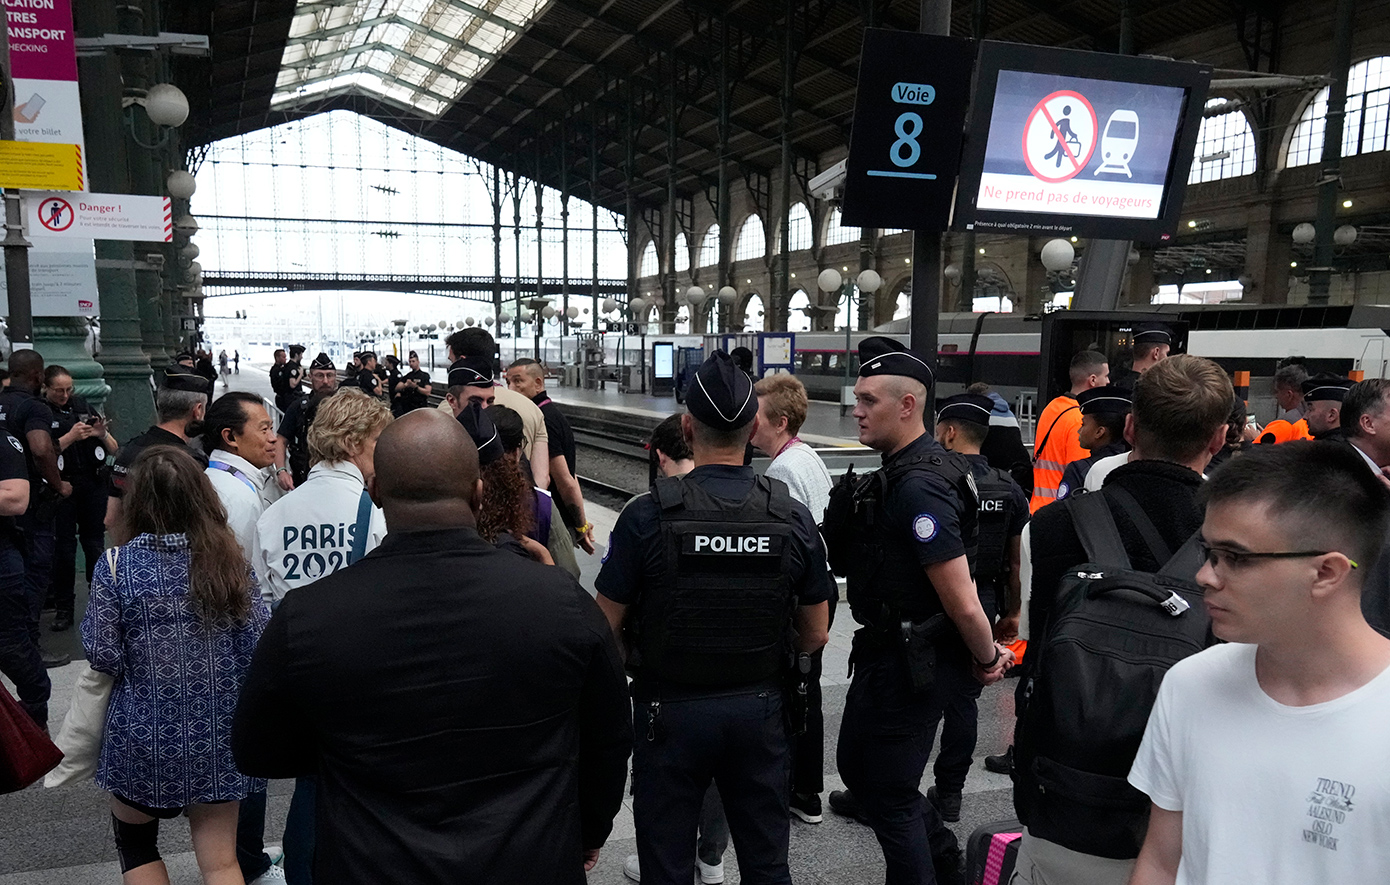 Δολιοφθορά σε σιδηροδρομικές εγκαταστάσεις: Η εισαγγελία του Παρισιού αναλαμβάνει την έρευνα